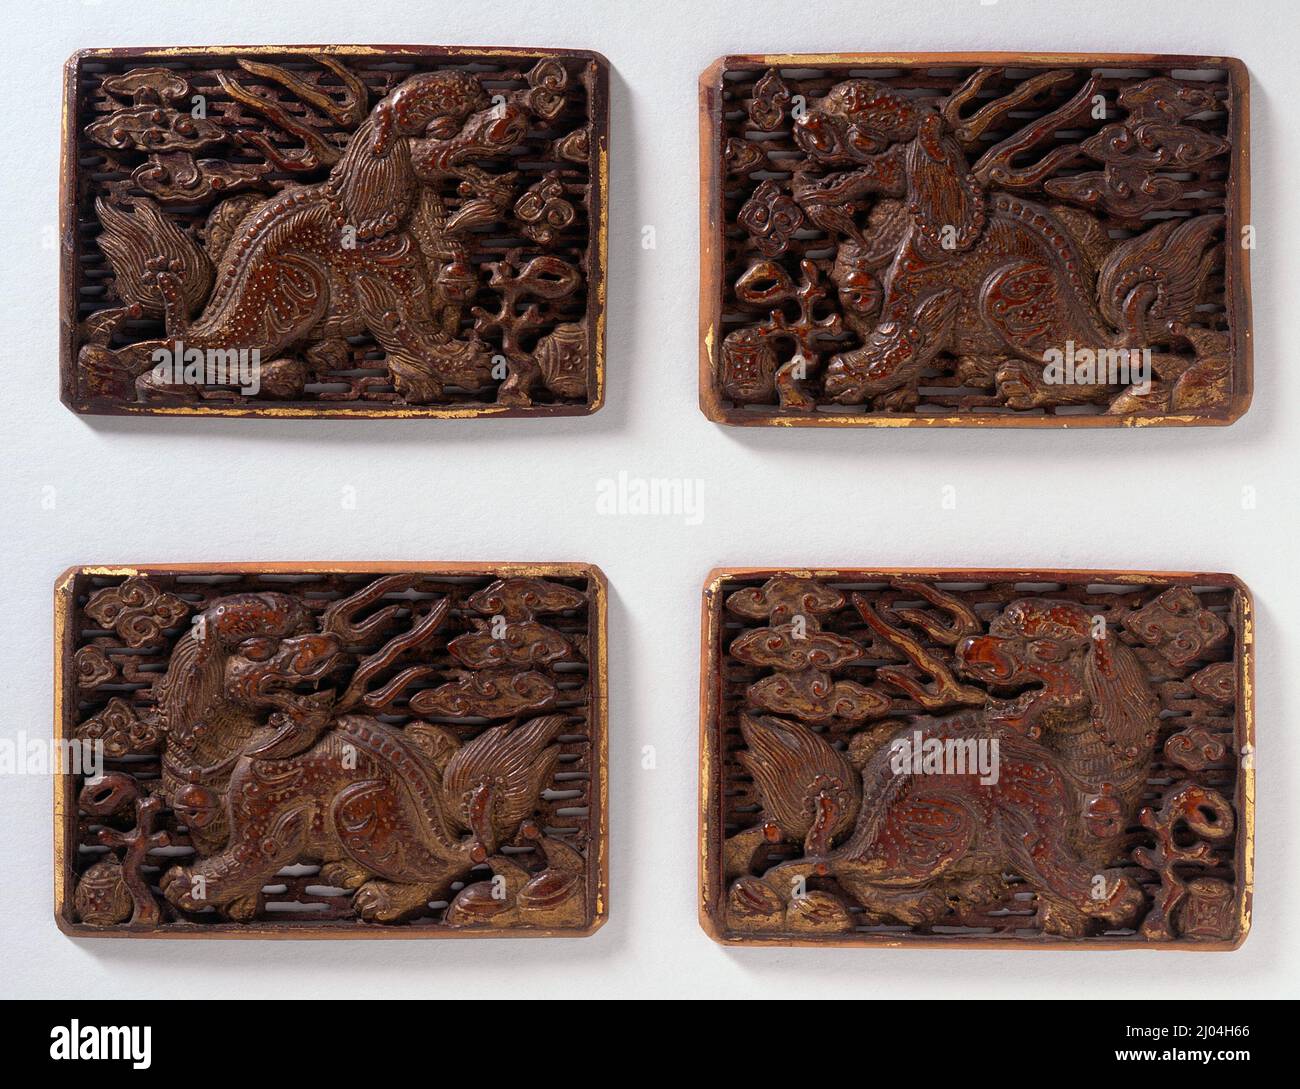 Cinturón de madera. Corea, dinastía Joseon (1392-1910), siglo 18th. Joyas y adornos; adornos desgastados. Madera tallada con laca y dorado Foto de stock